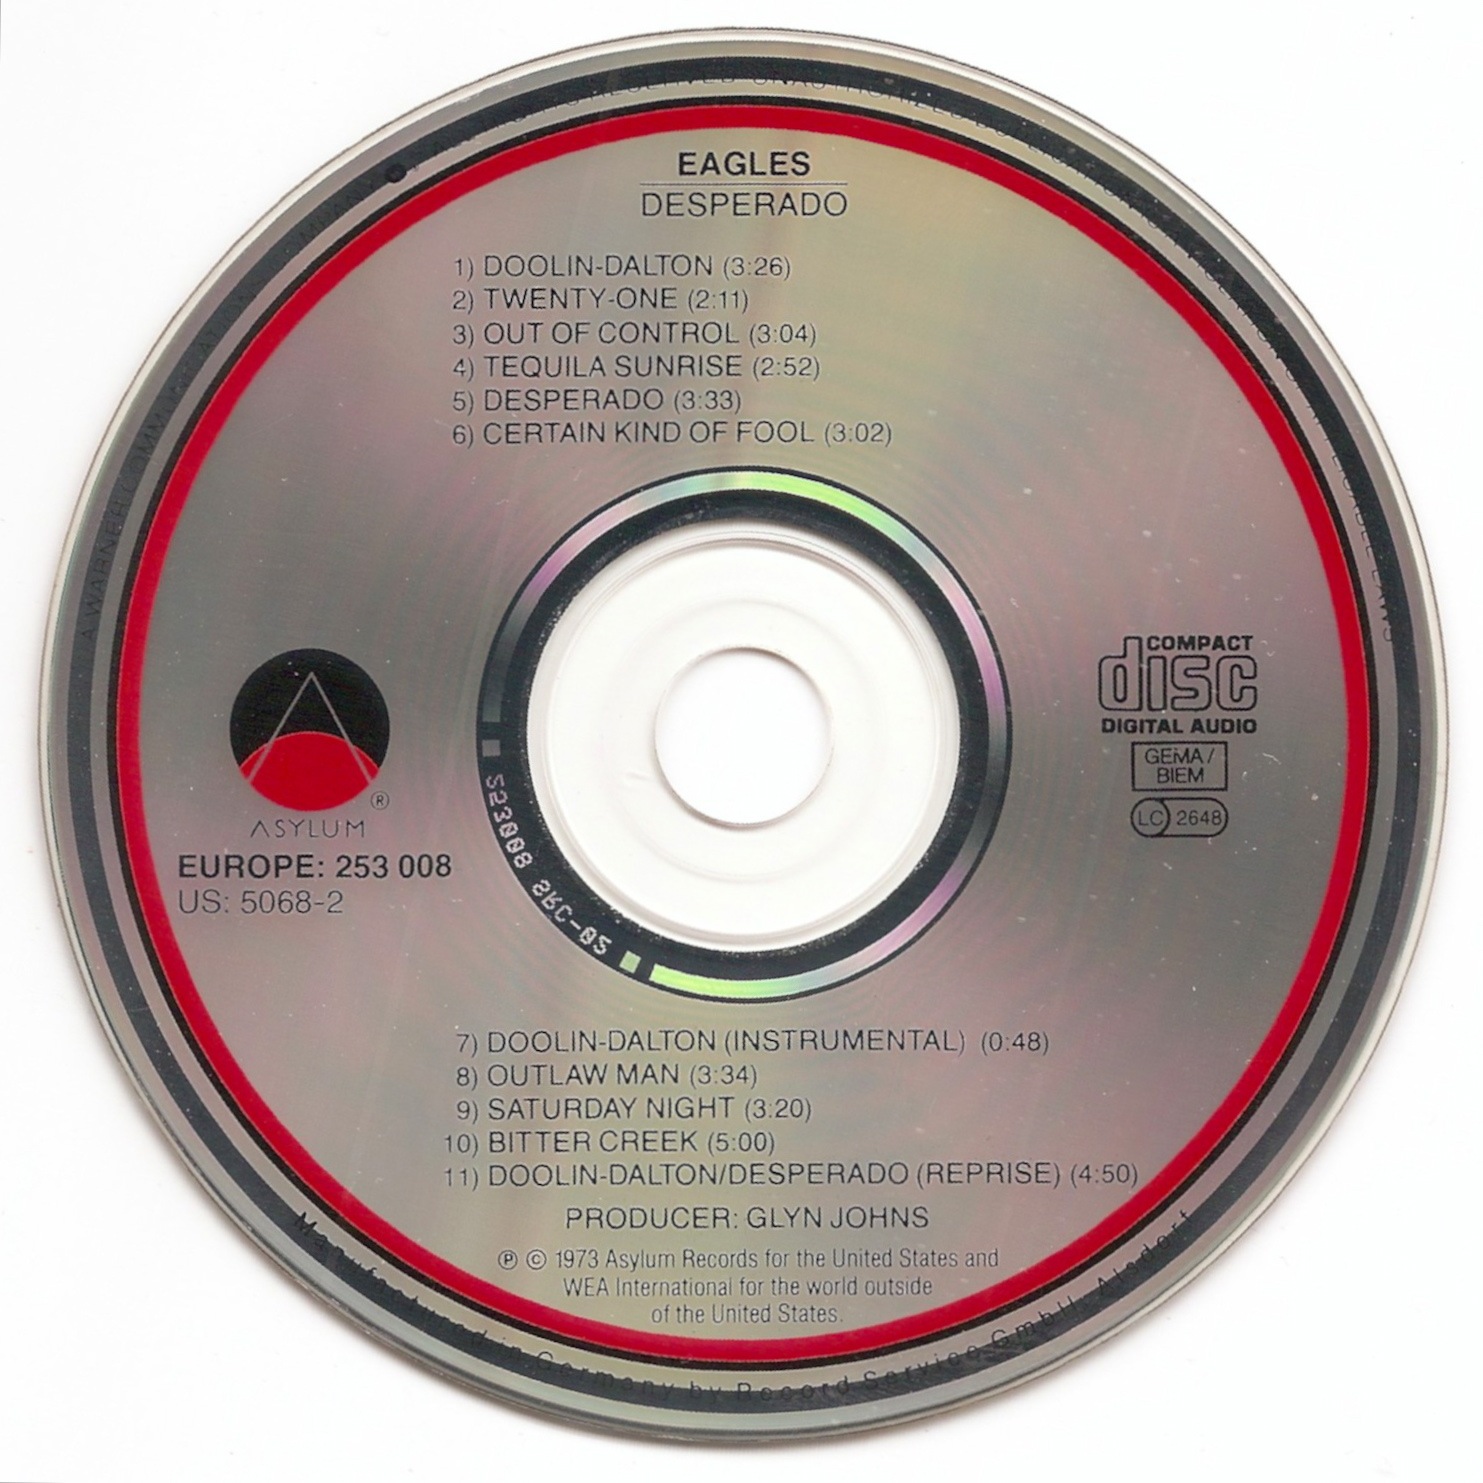 The First Pressing CD Collection: Eagles - Desperado